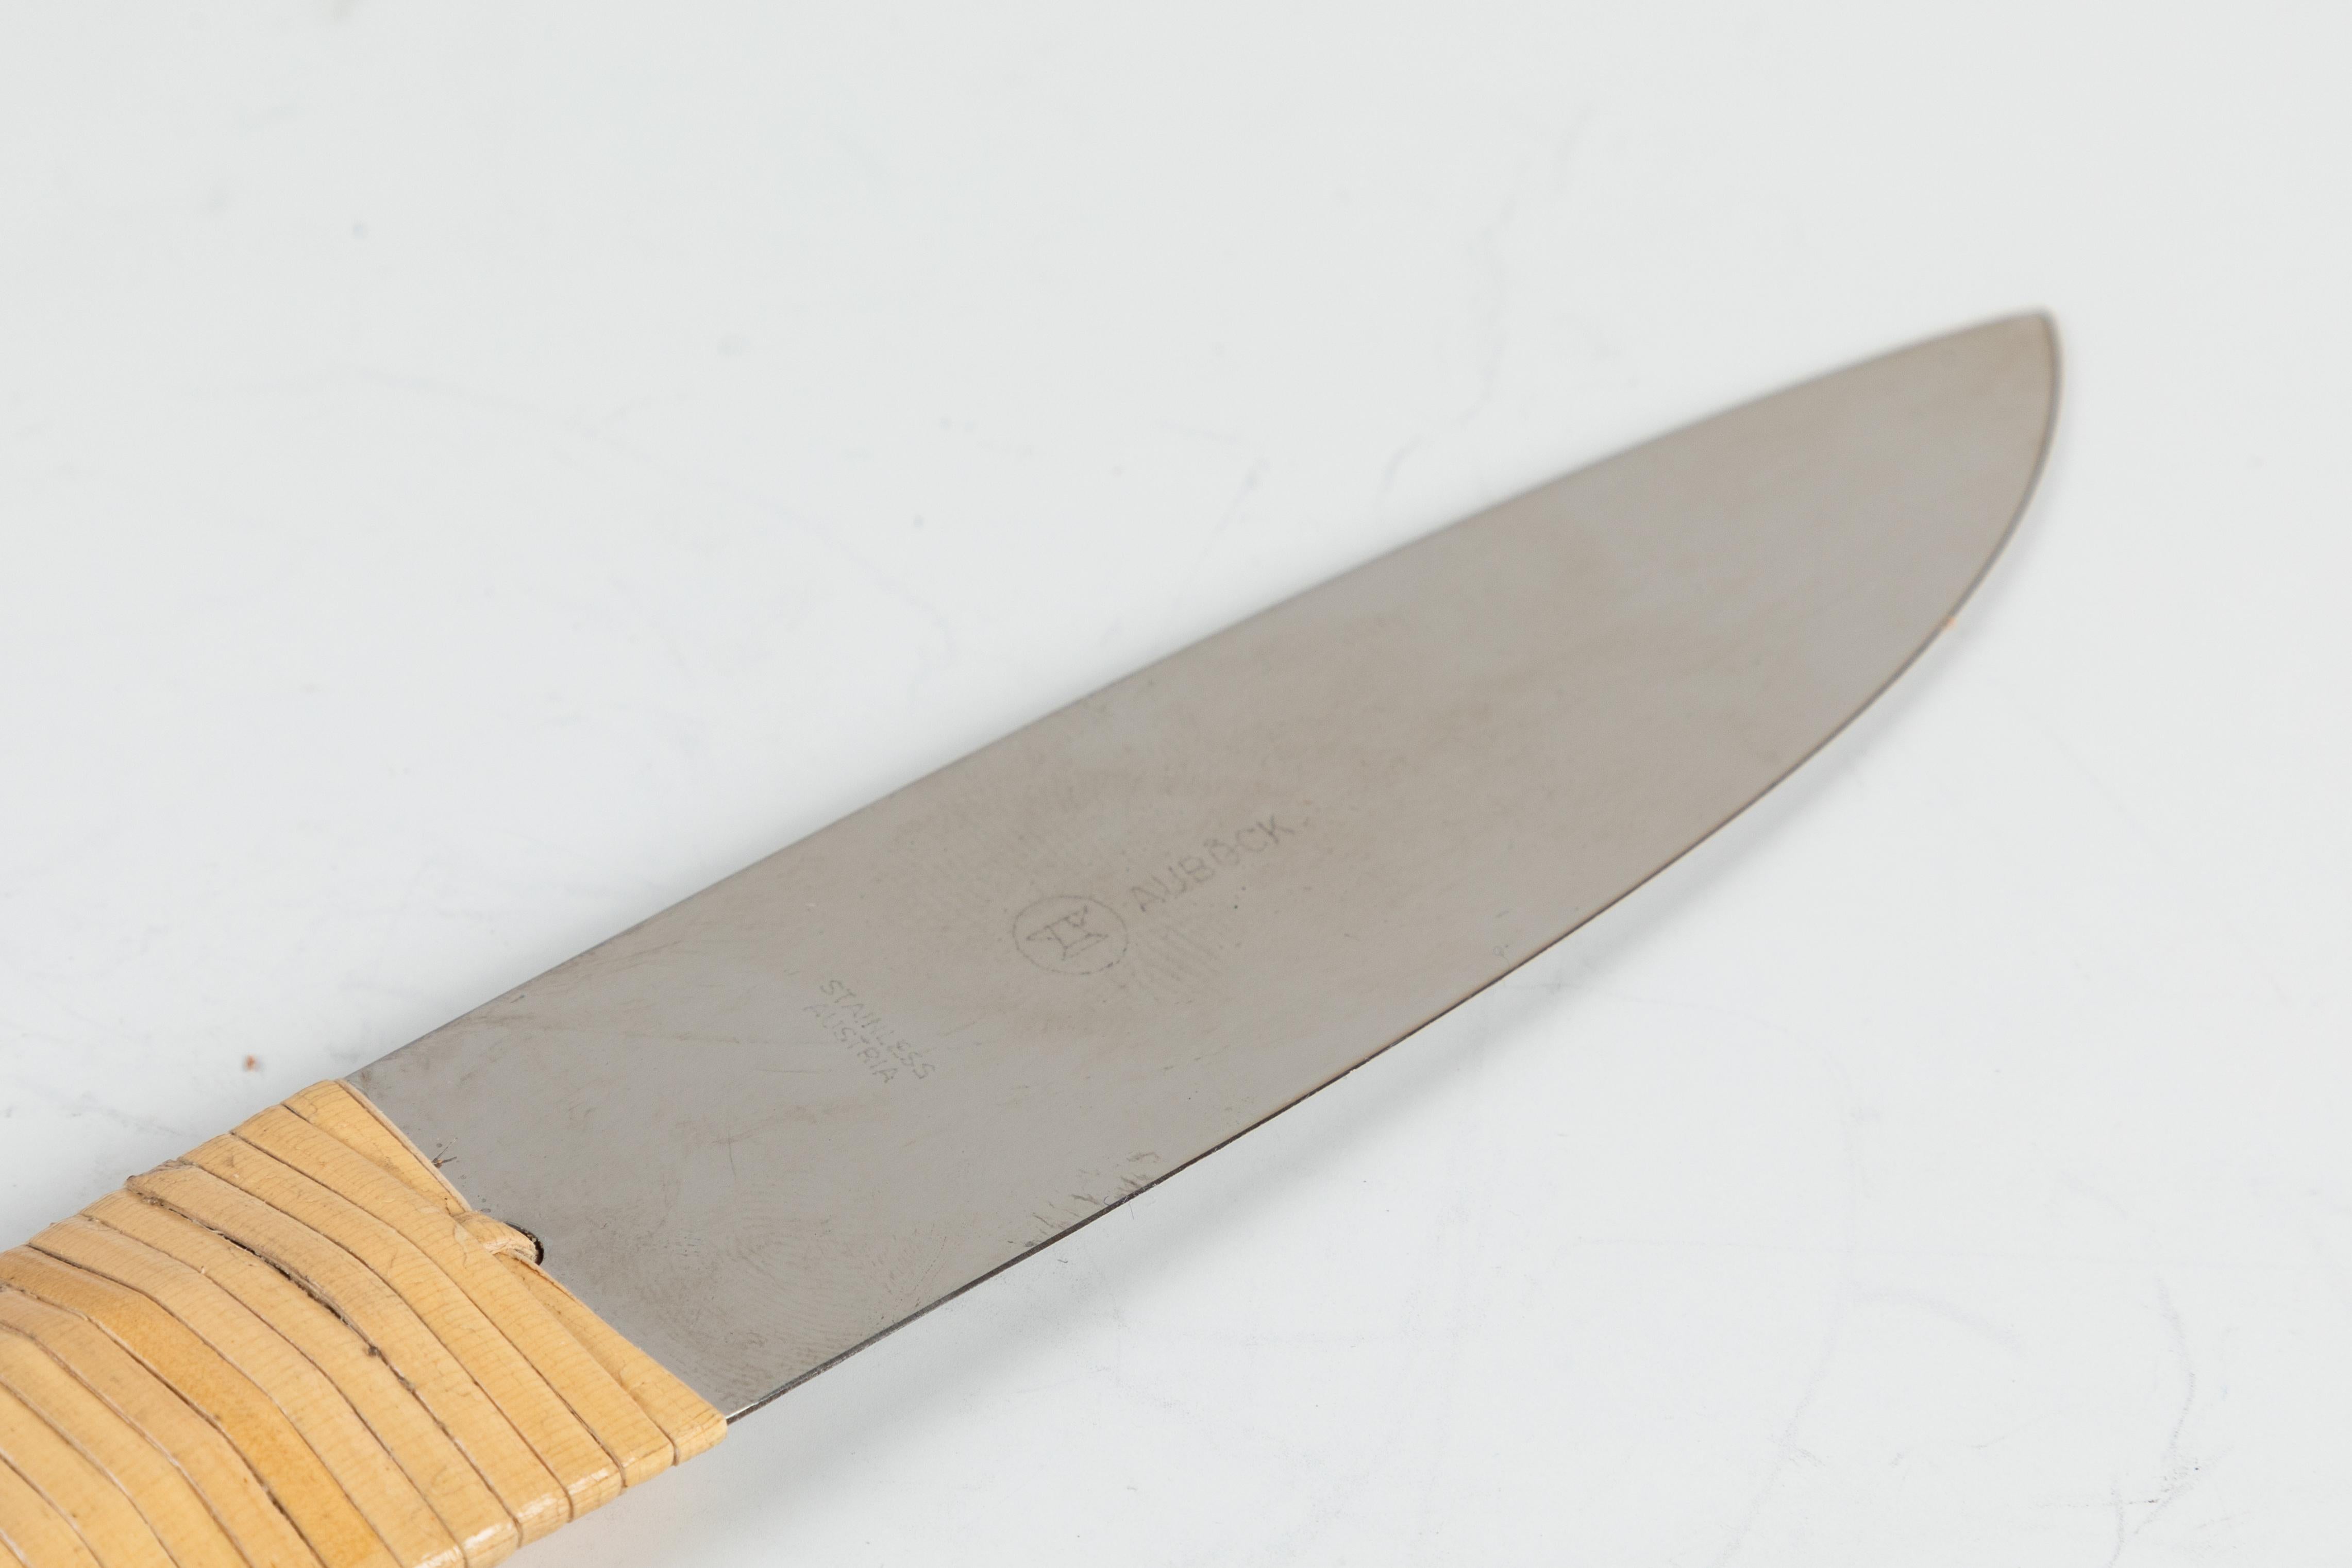 Carl Auböck Modèle #4828 couteau en acier et osier. Conçu dans les années 1950, ce couteau sculptural et incroyablement raffiné  est réalisé en acier poli et en osier tressé à la main.

Prix individuel. Cette offre concerne le couteau seulement. Un